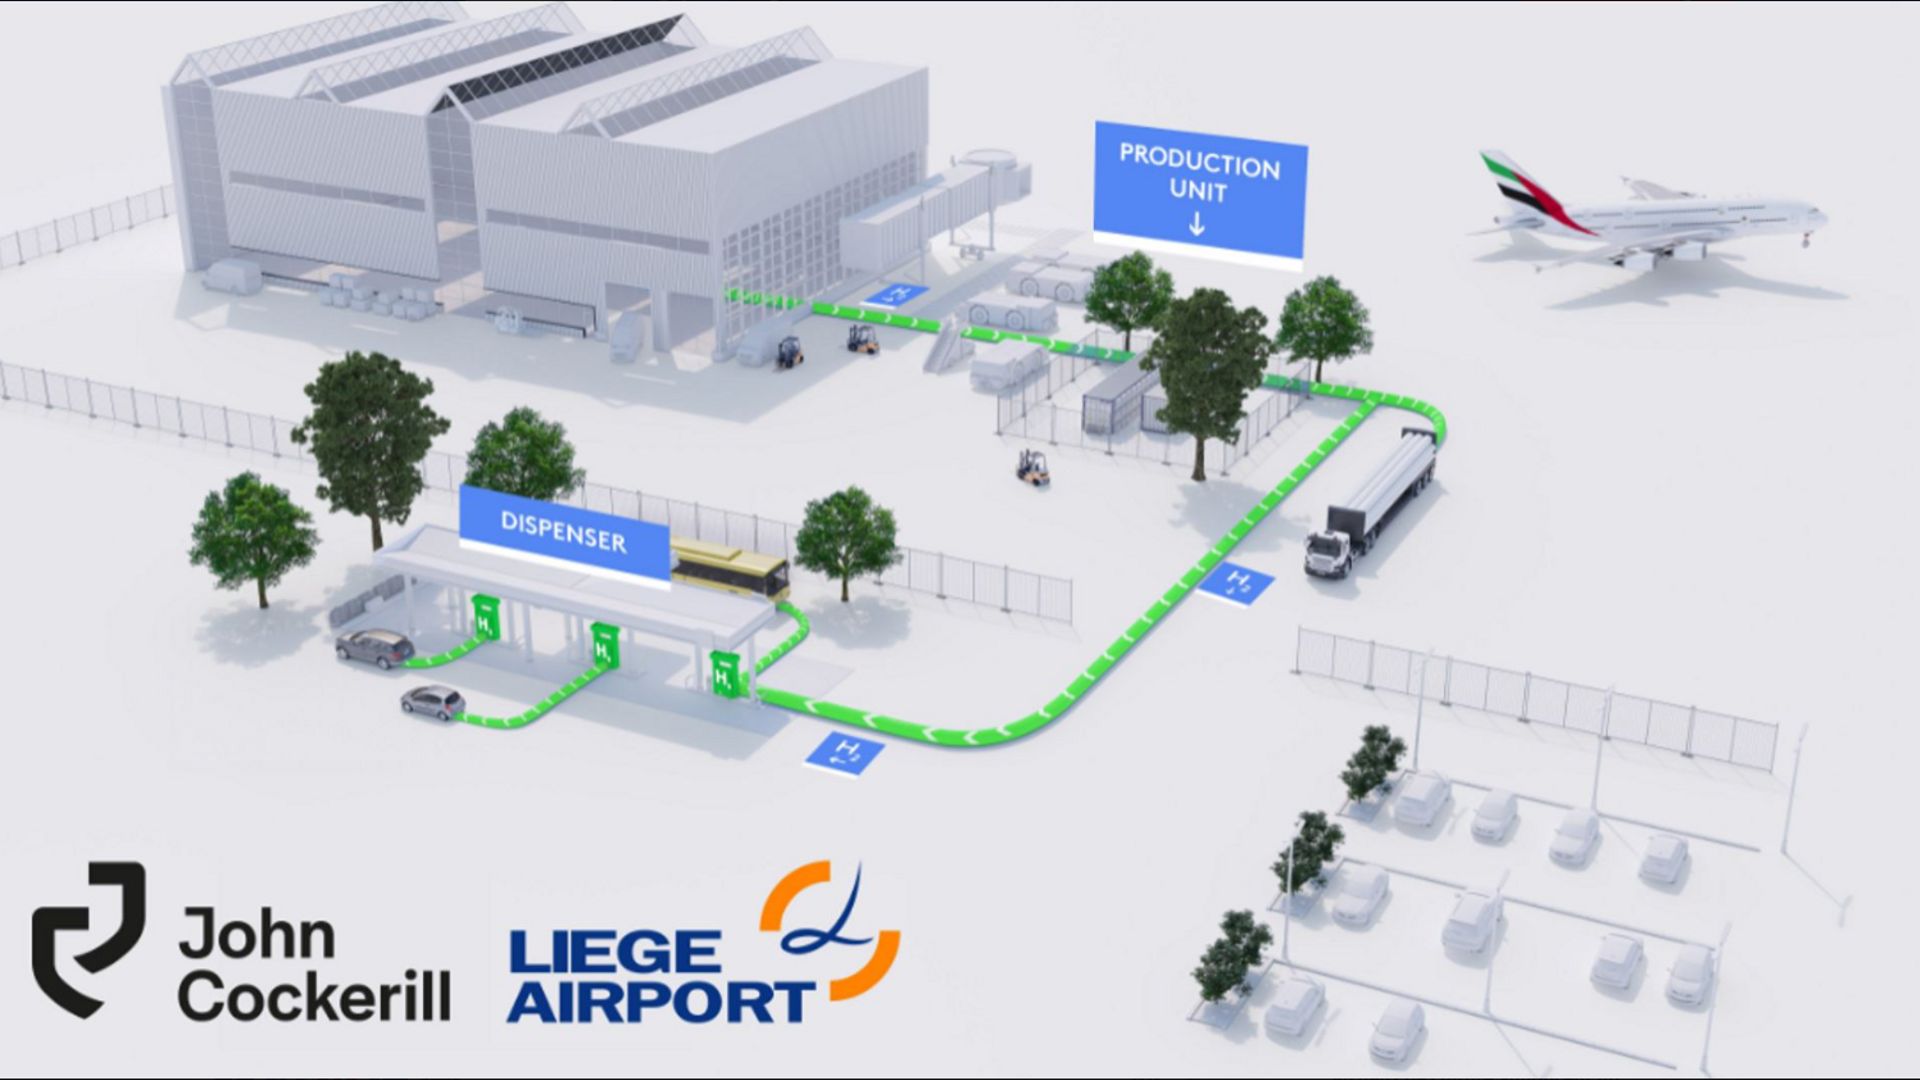 L'unité de production et de distribution d'hydrogène vert sera construit par le groupe John Cockerill à Liege Airport